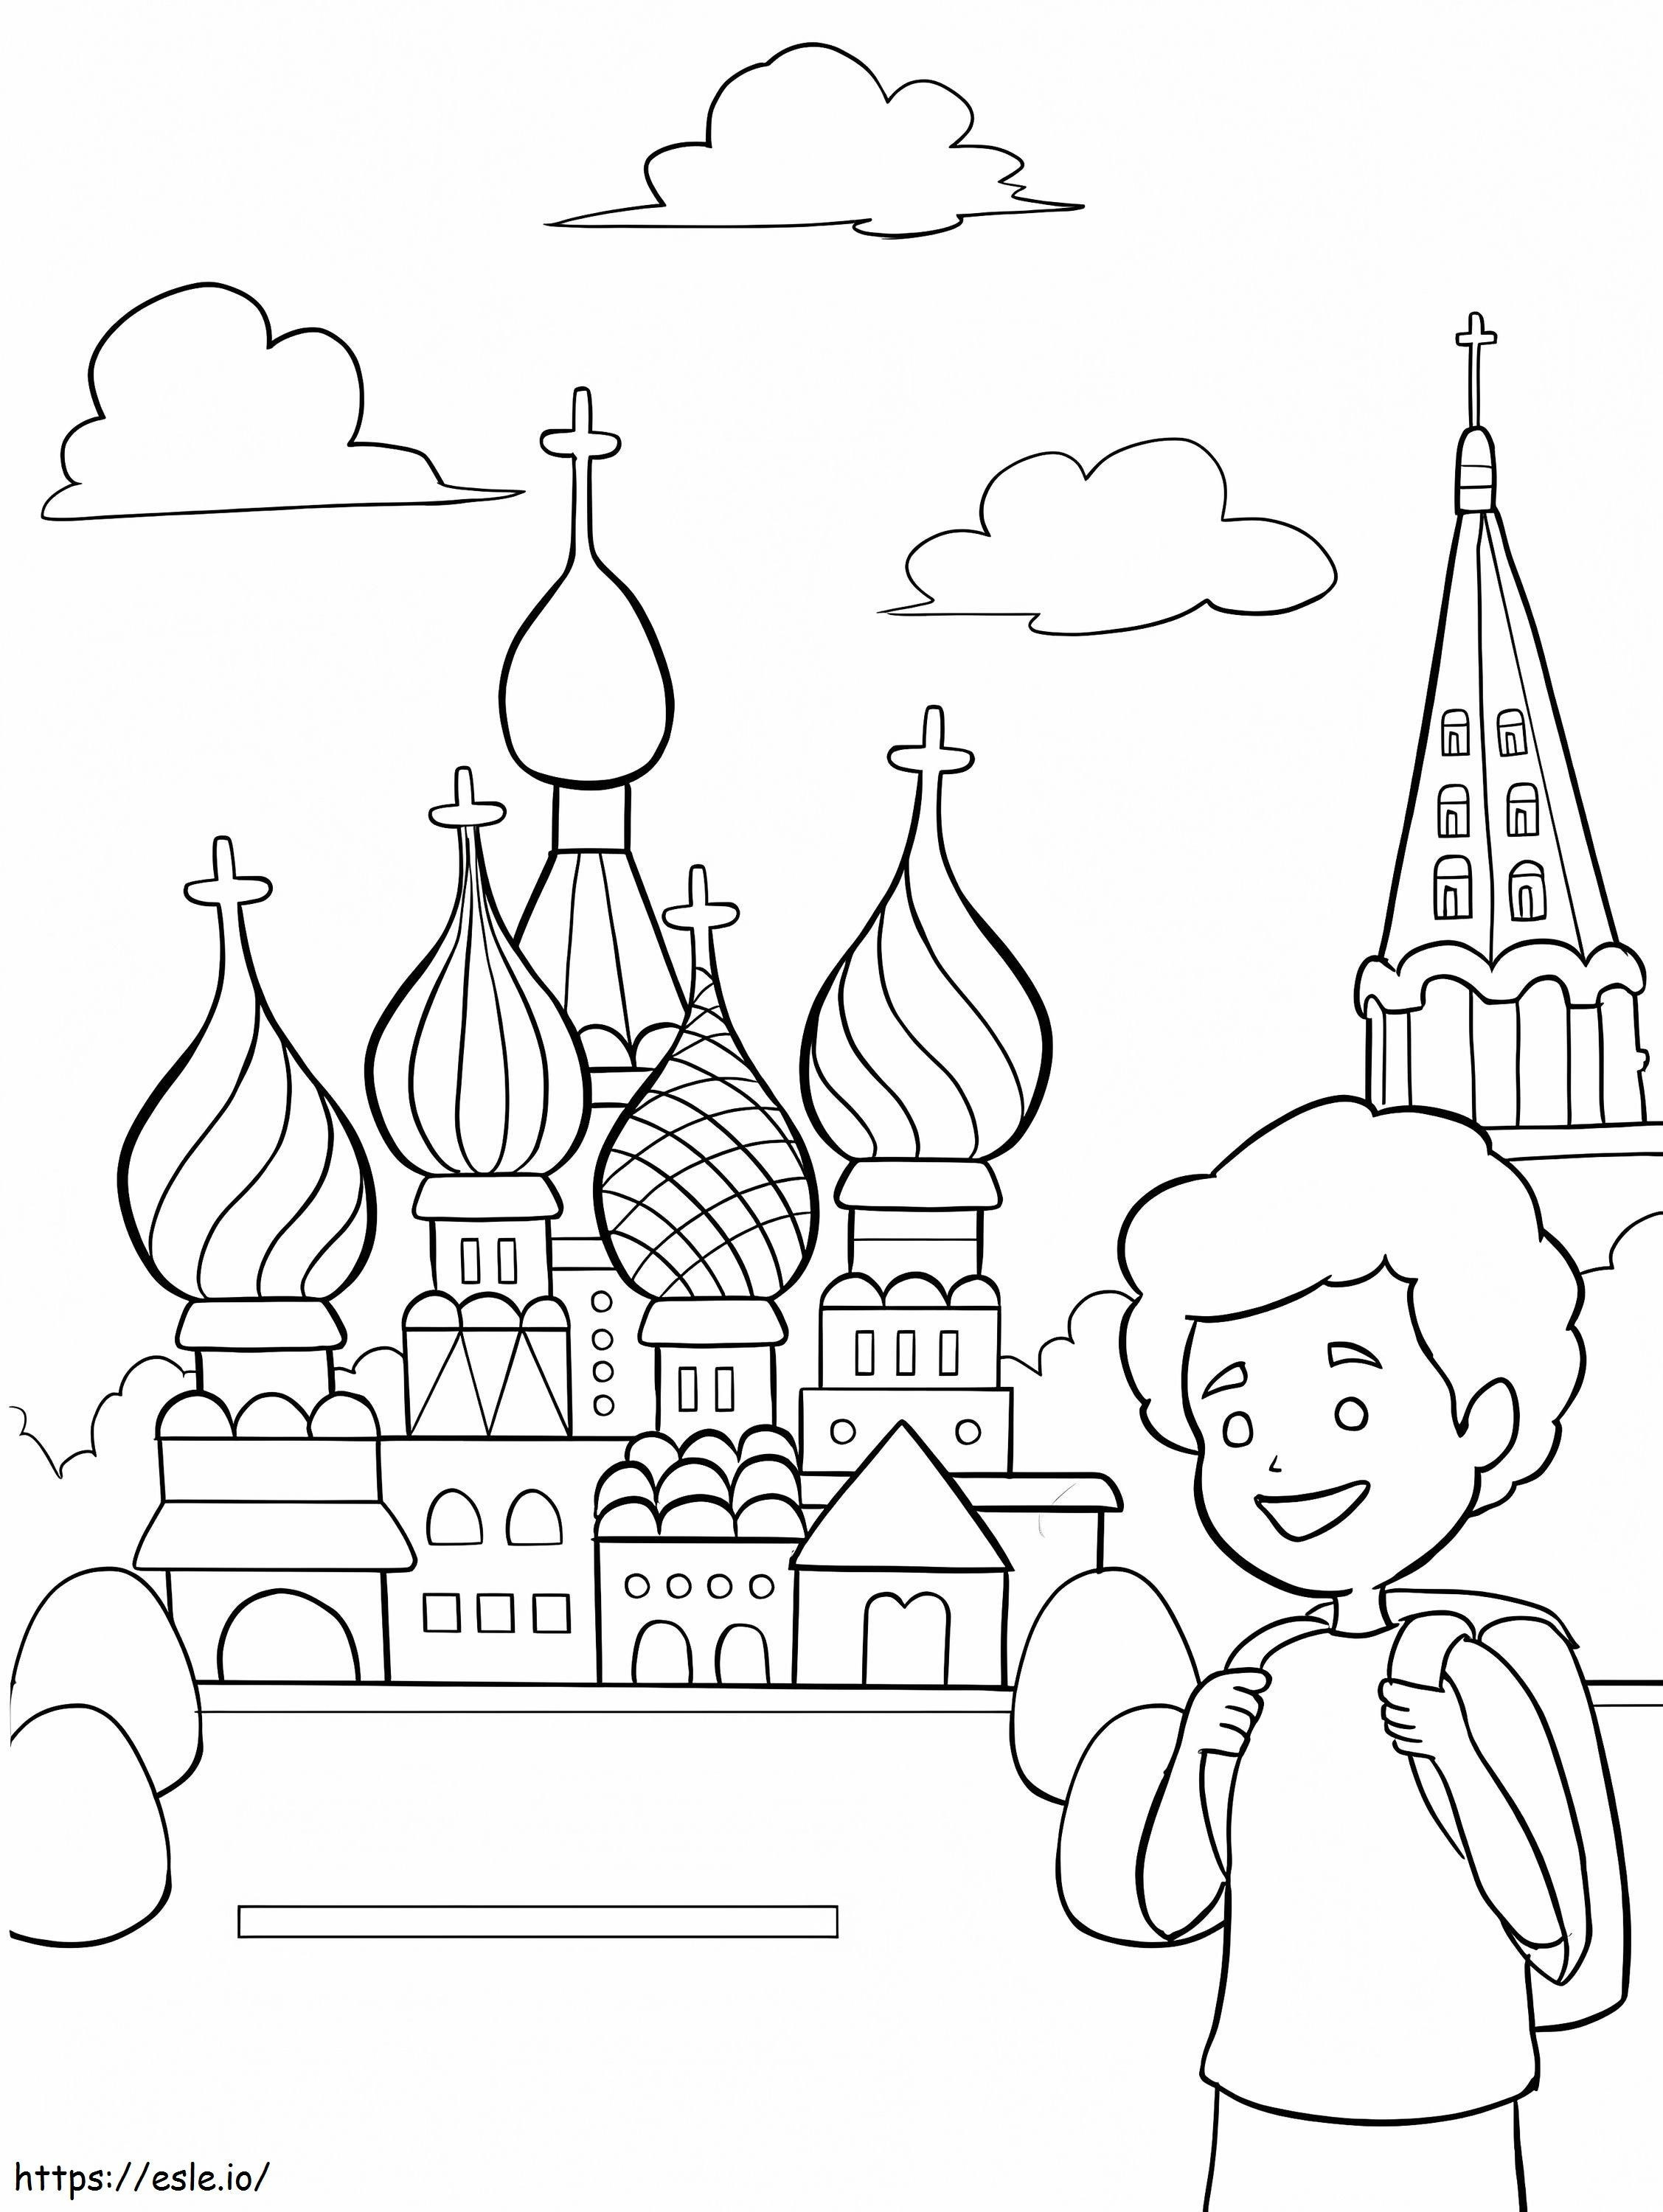 Saint Petersburg 2 coloring page